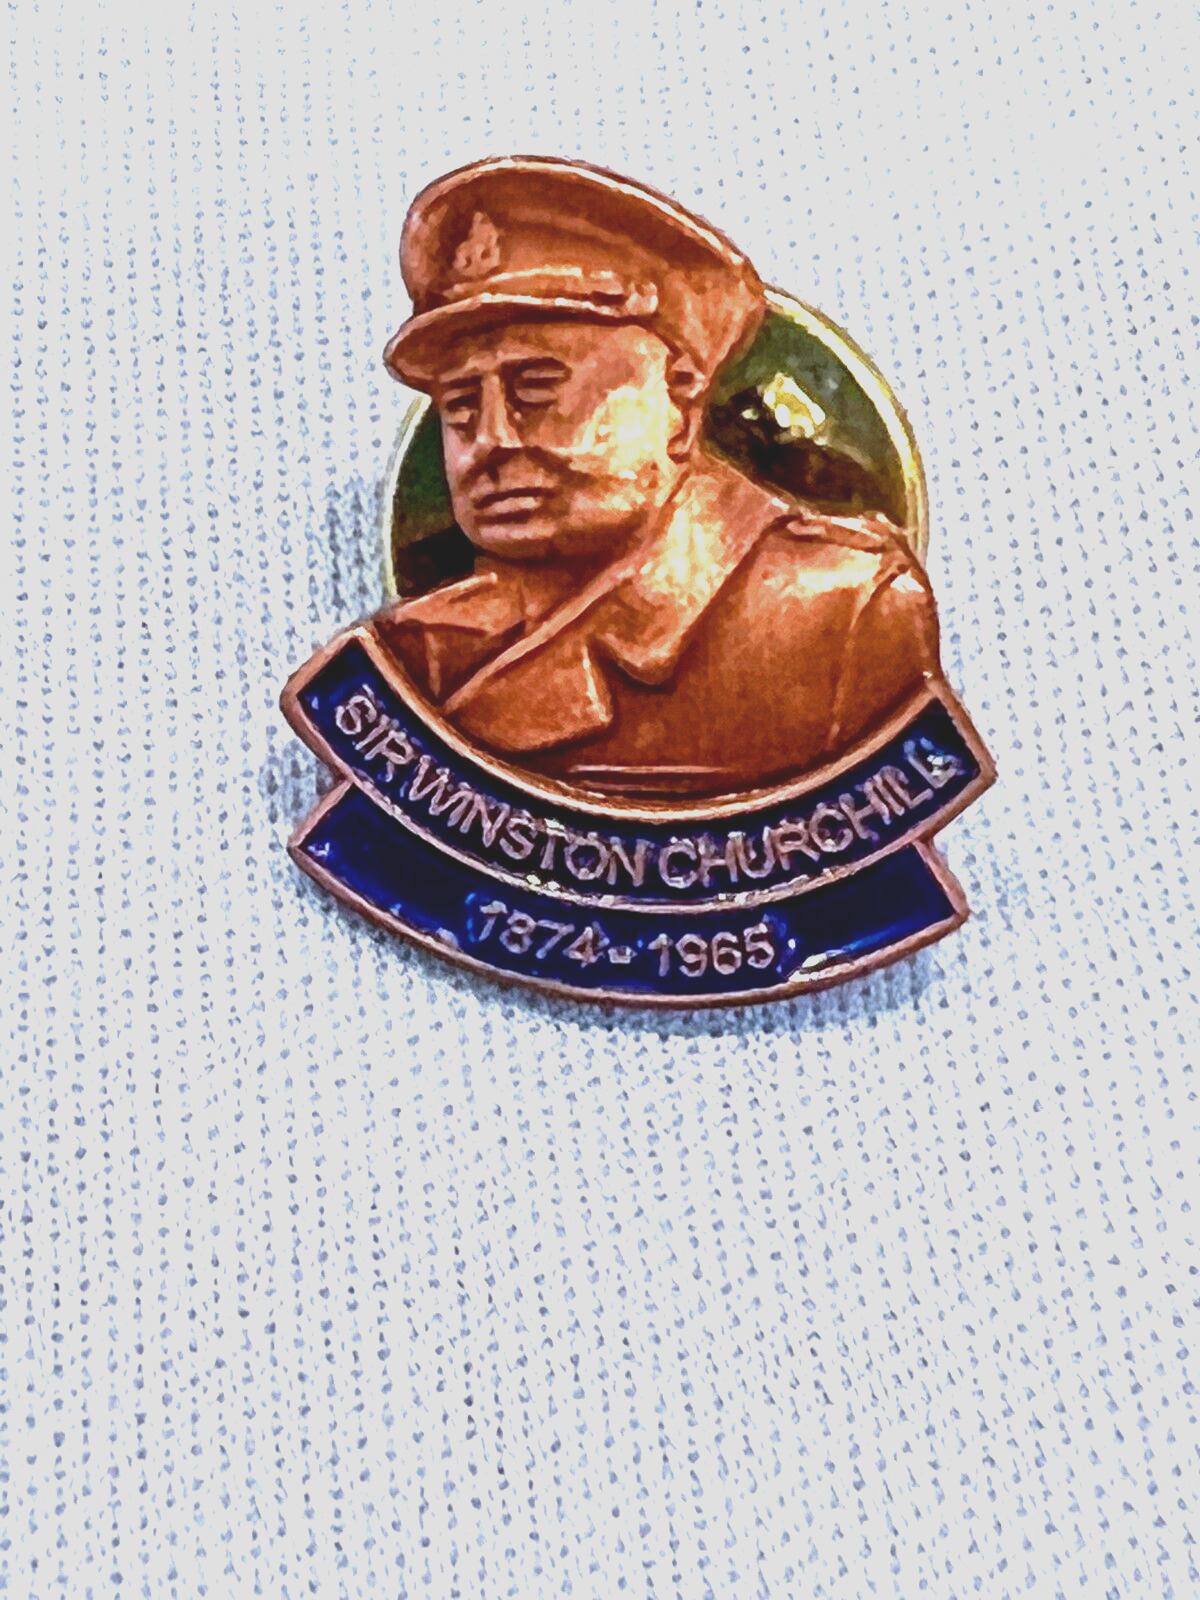 Vintage Prime Minister Winston Churchill Commemorative Lapel Pin